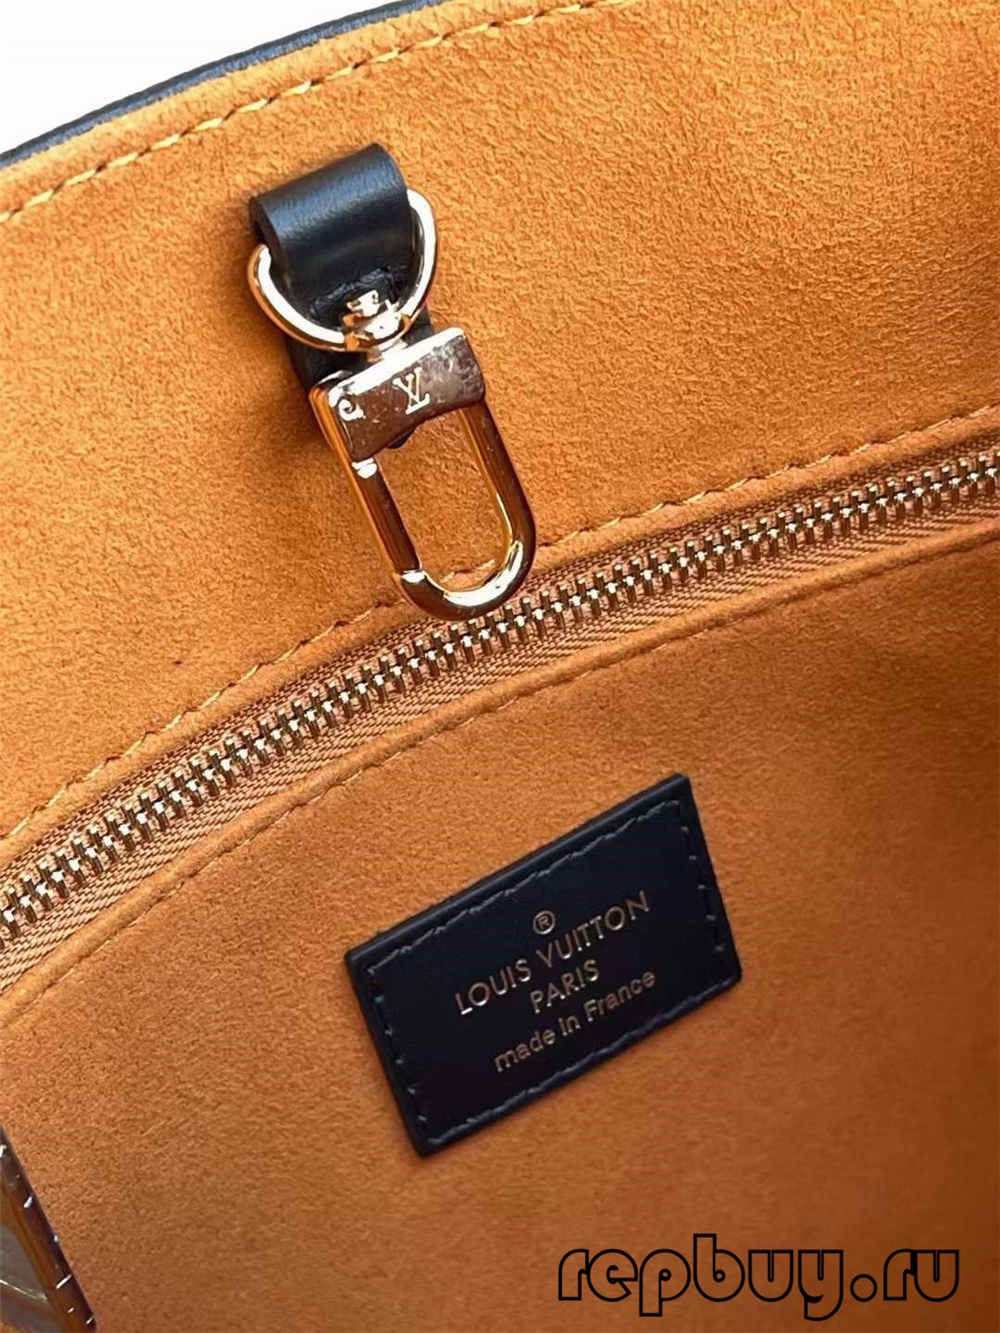 Louis Vuitton ONTHEGO M45653 Best quality replica bag (2022 updated)-Tulaga sili ona lelei Fake Louis Vuitton Bag Faleoloa i luga ole laiga, Replica designer bag ru